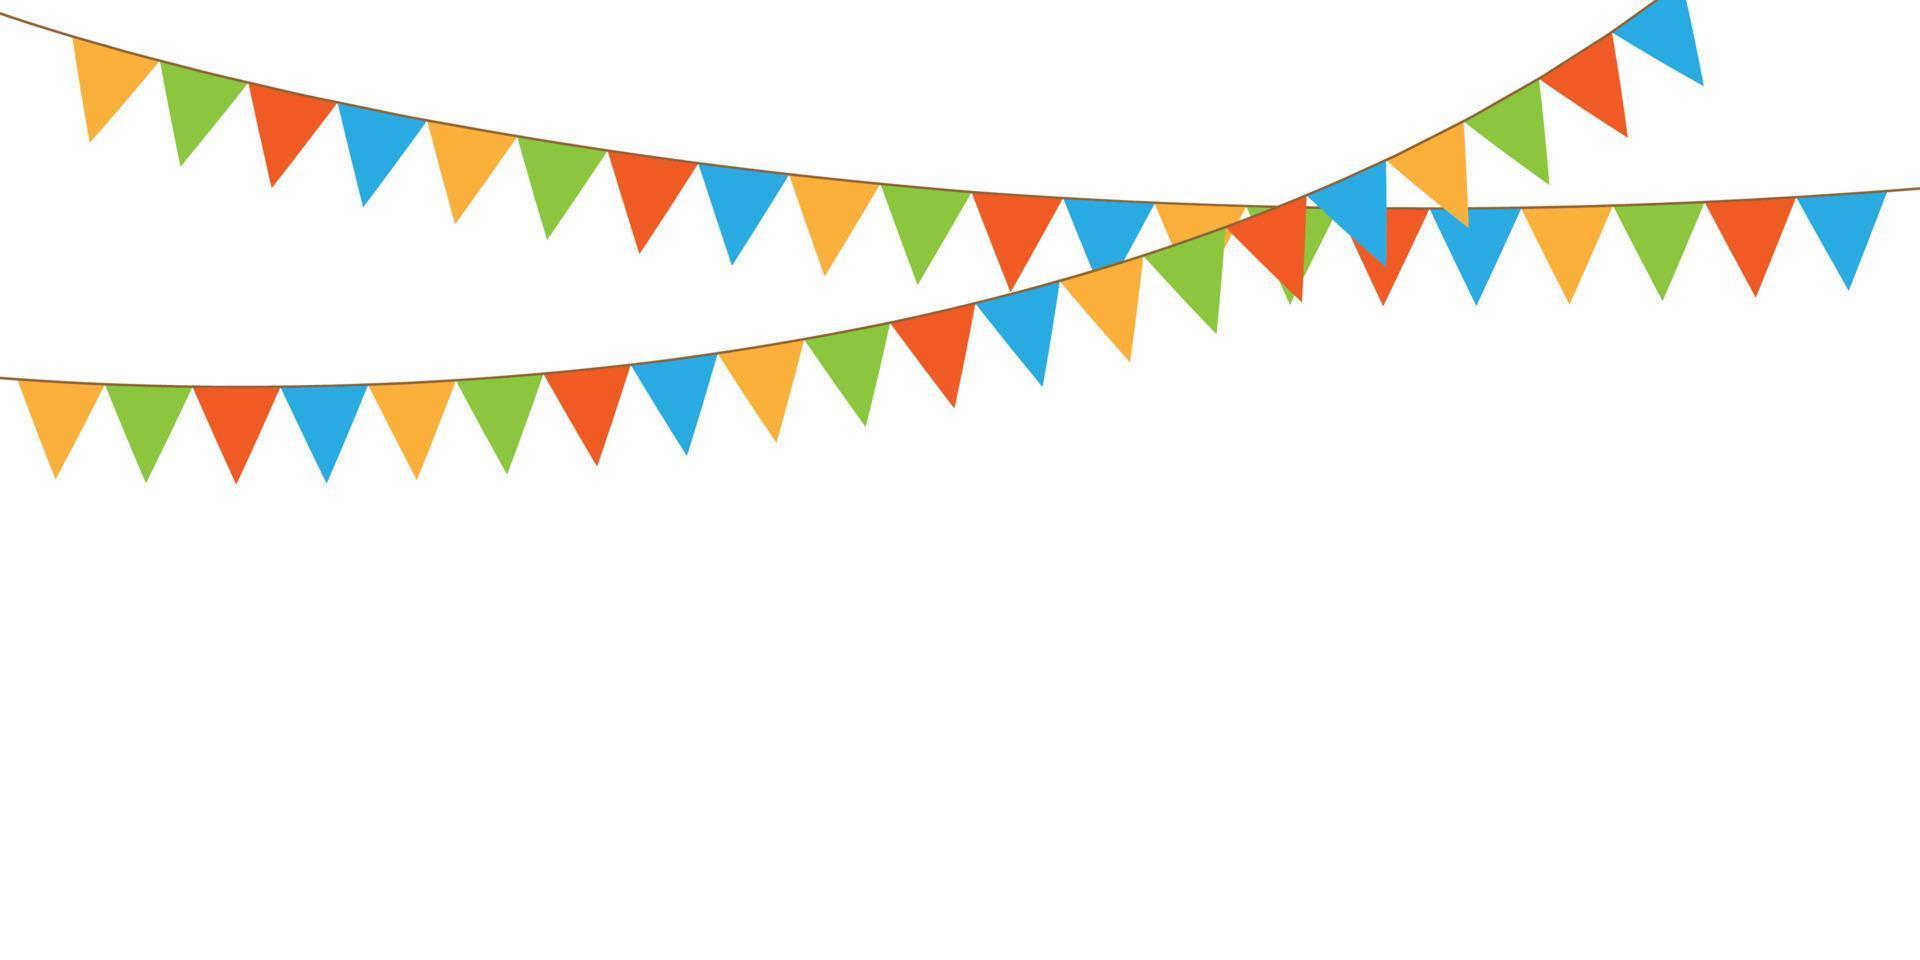 chaîne de fanions de fête colorée, guirlande de drapeaux, fond de vacances avec drapeaux colorés suspendus, illustration vectorielle vecteur